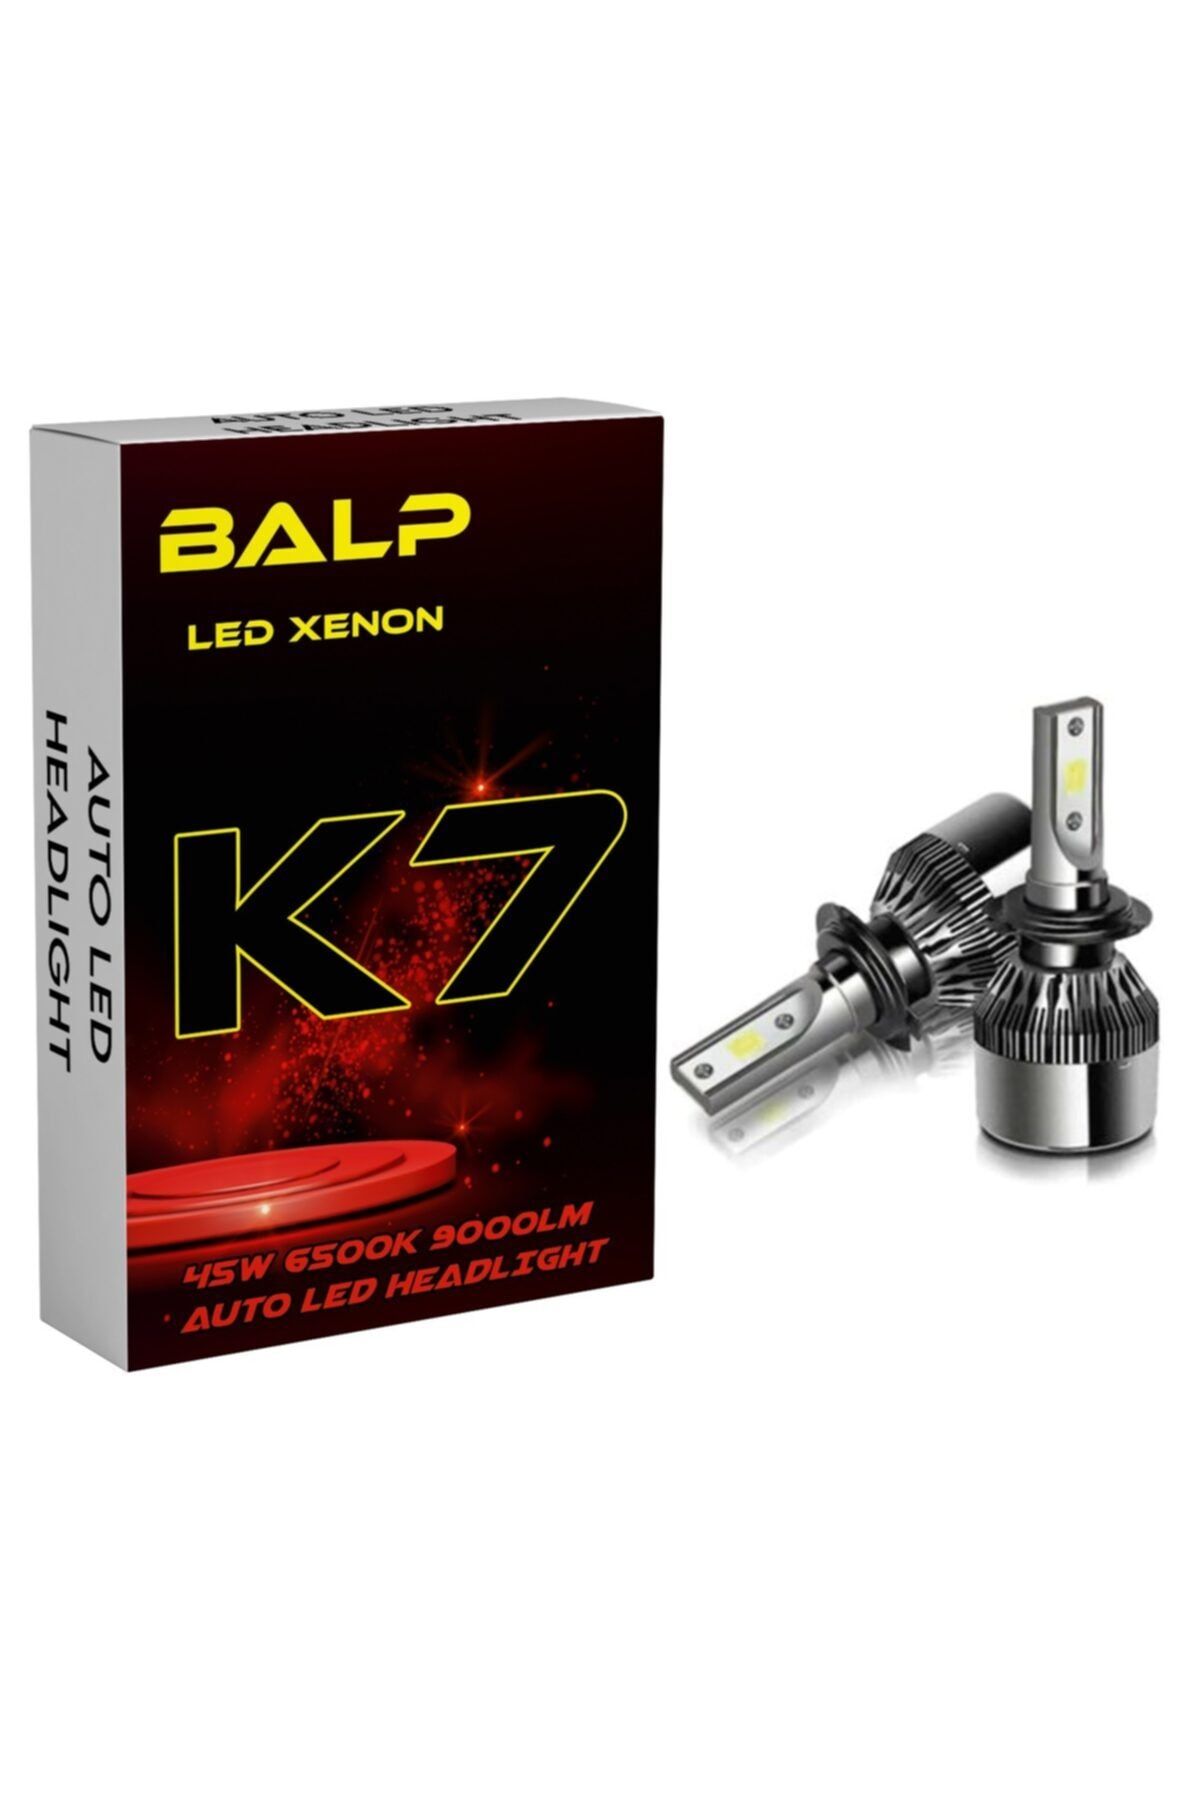 BALP H4 Led Xenon 2x Led Xenon 45w 9000lm 6500k Far Ampülü Led Zenon Şimşek Etkili K7-xen